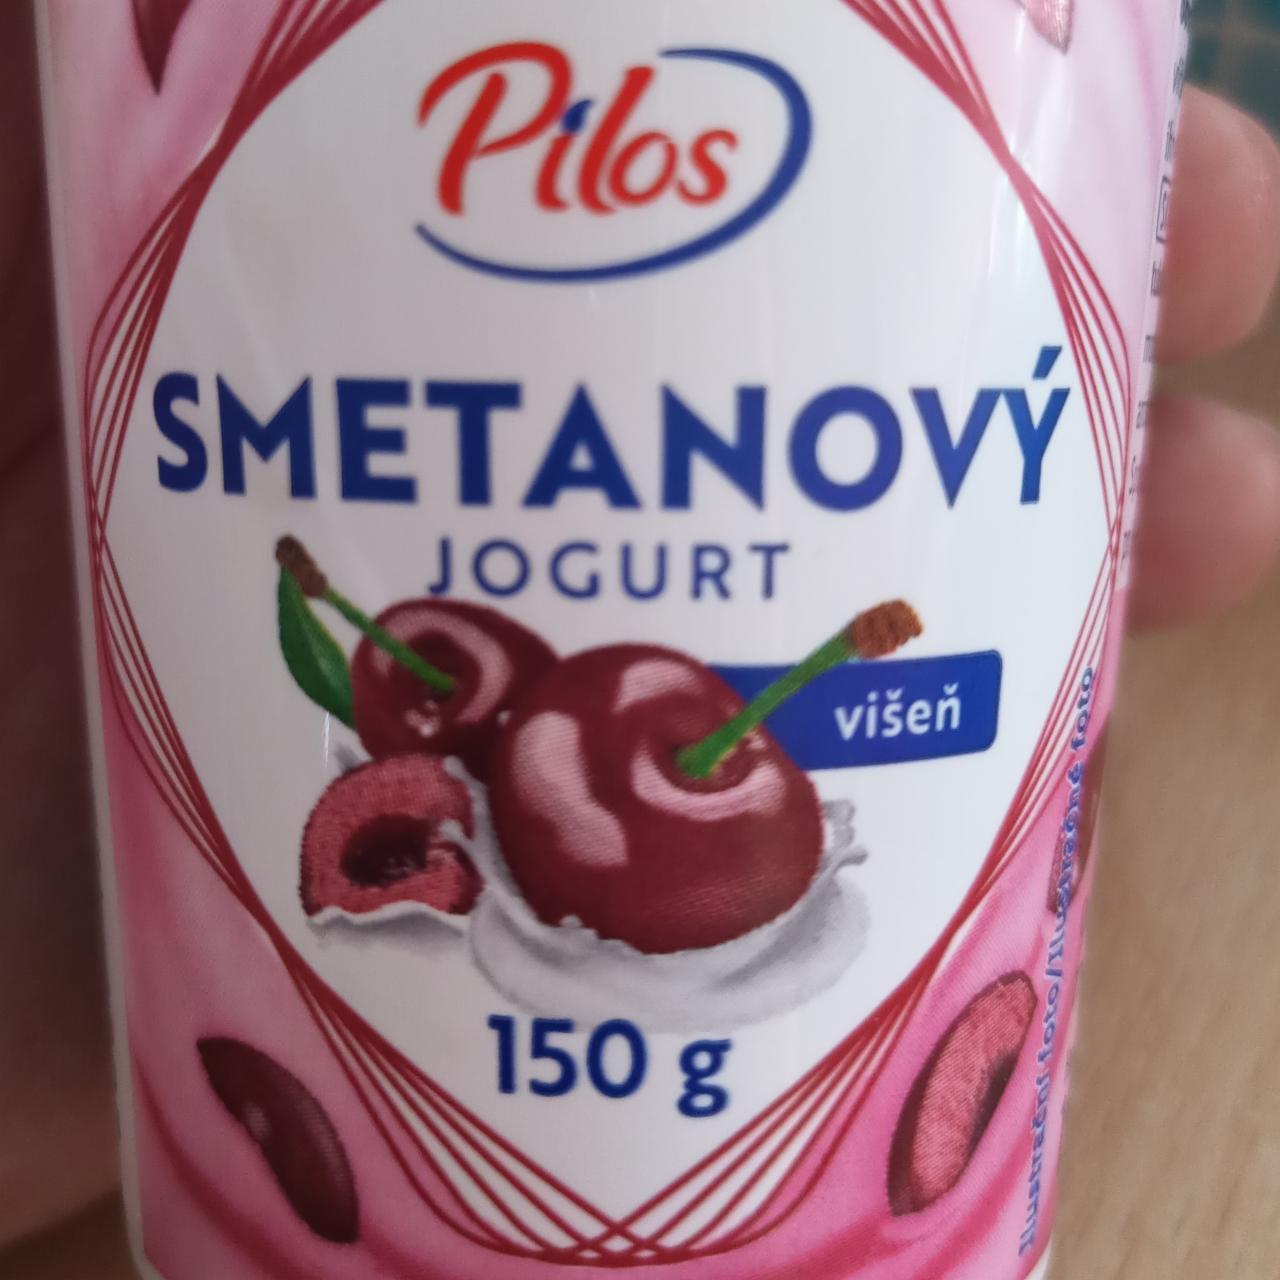 Фото - Smetanový jogurt višeň Pilos